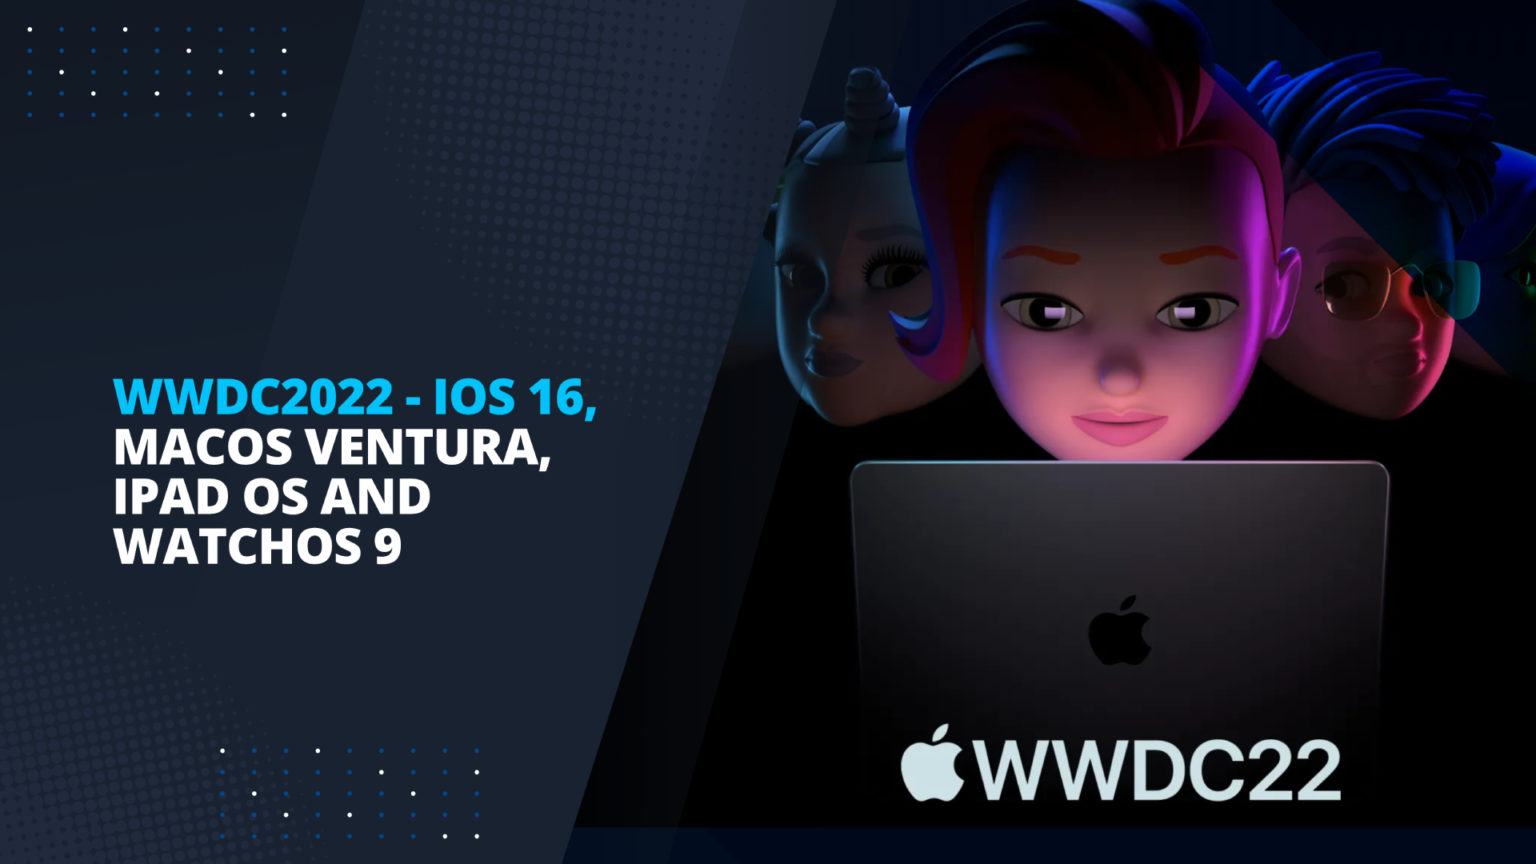 WWDC 2022 - Apple announces iOS16, MacOS Ventura, iPadOS 16 and WatchOS 9